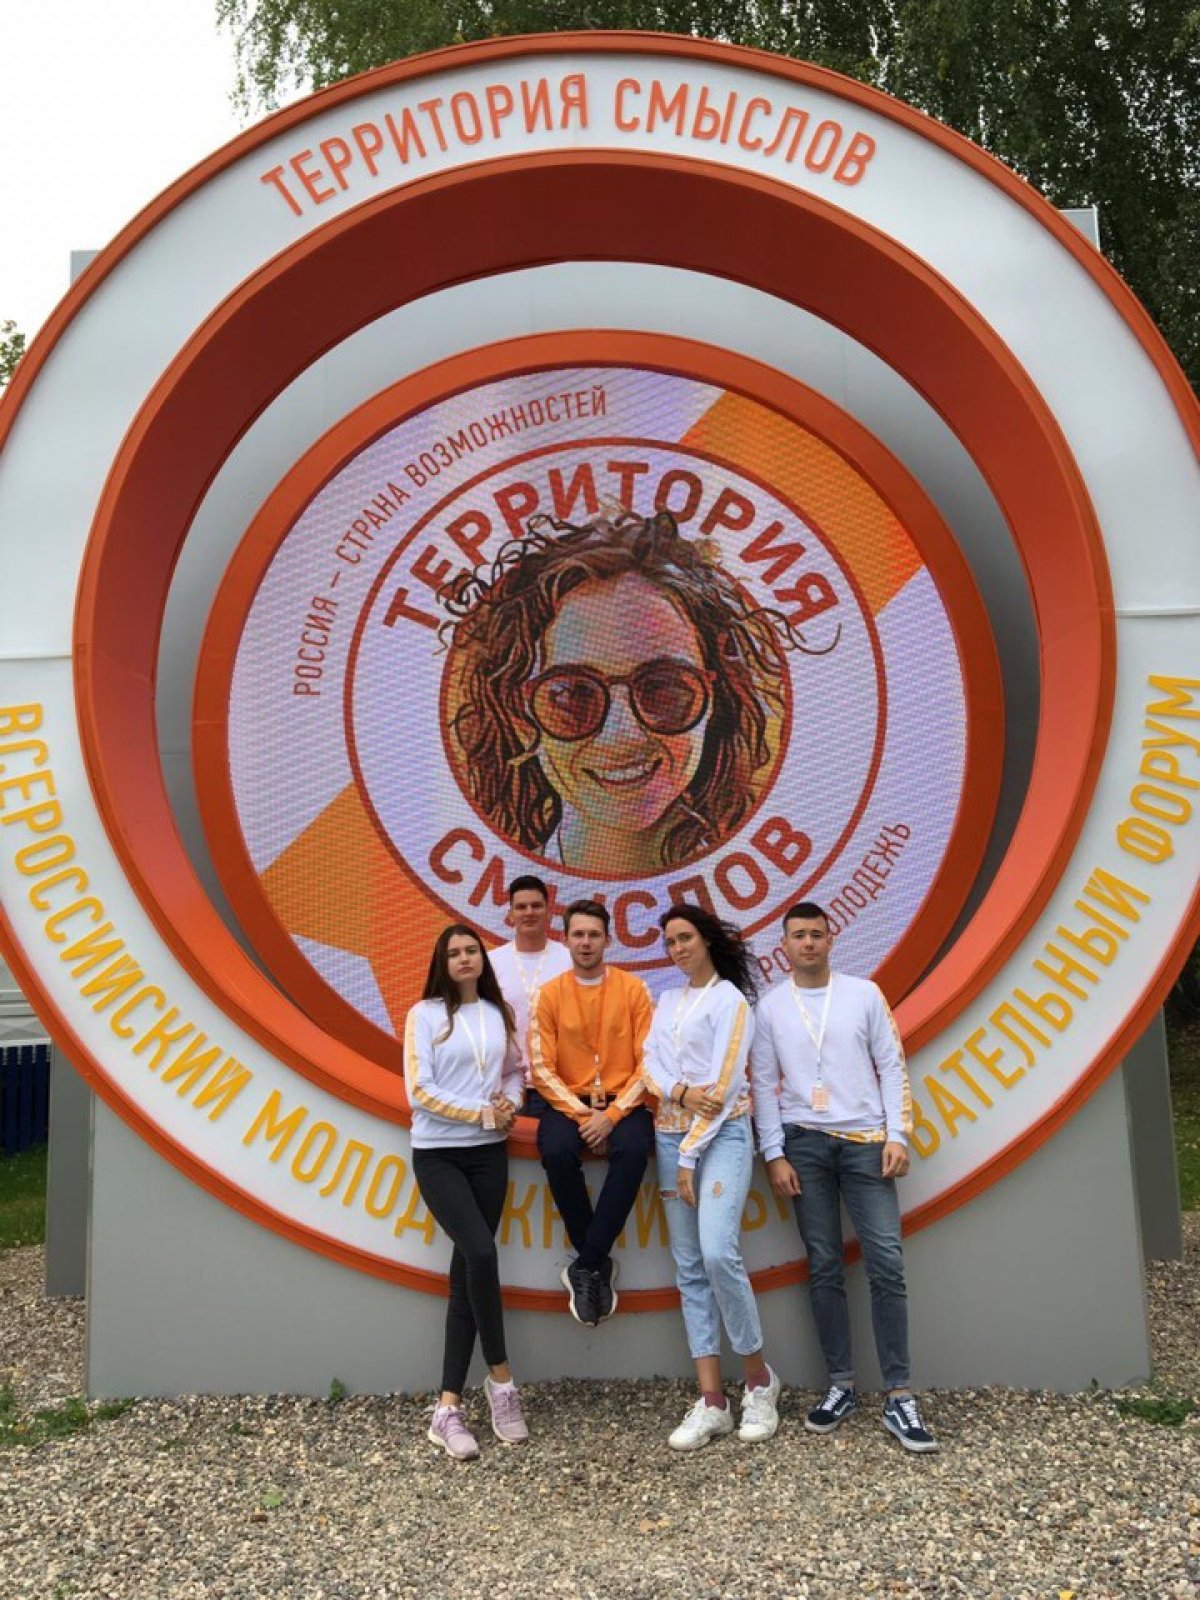 Студенты в составе делегации от Воронежской области участвуют во Всероссийском молодежном образовательном форуме «Территория смыслов» (смена «Экосреда - Экология»).